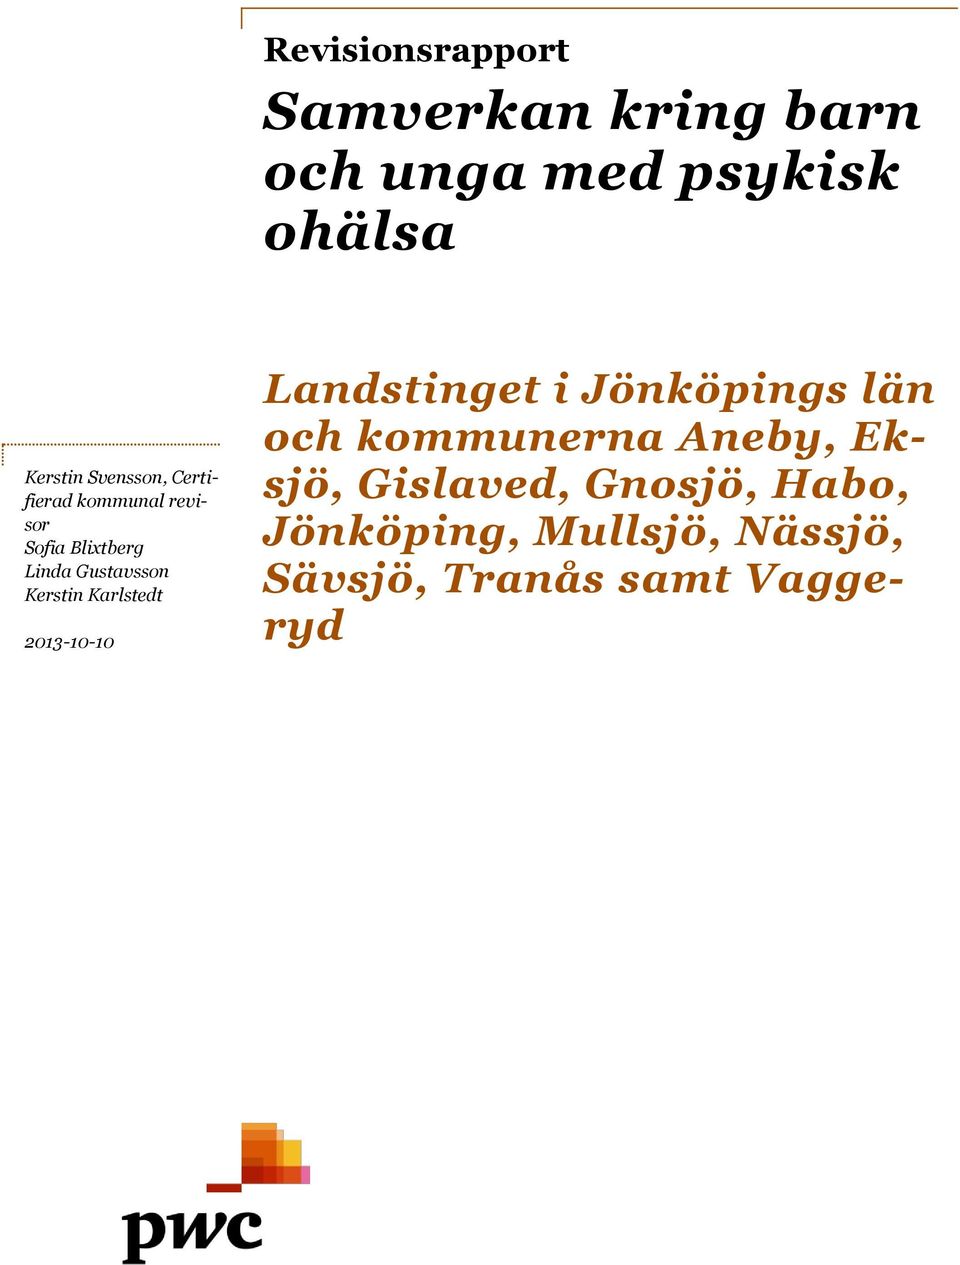 Kerstin Karlstedt 2013-10-10 Landstinget i Jönköpings län och kommunerna